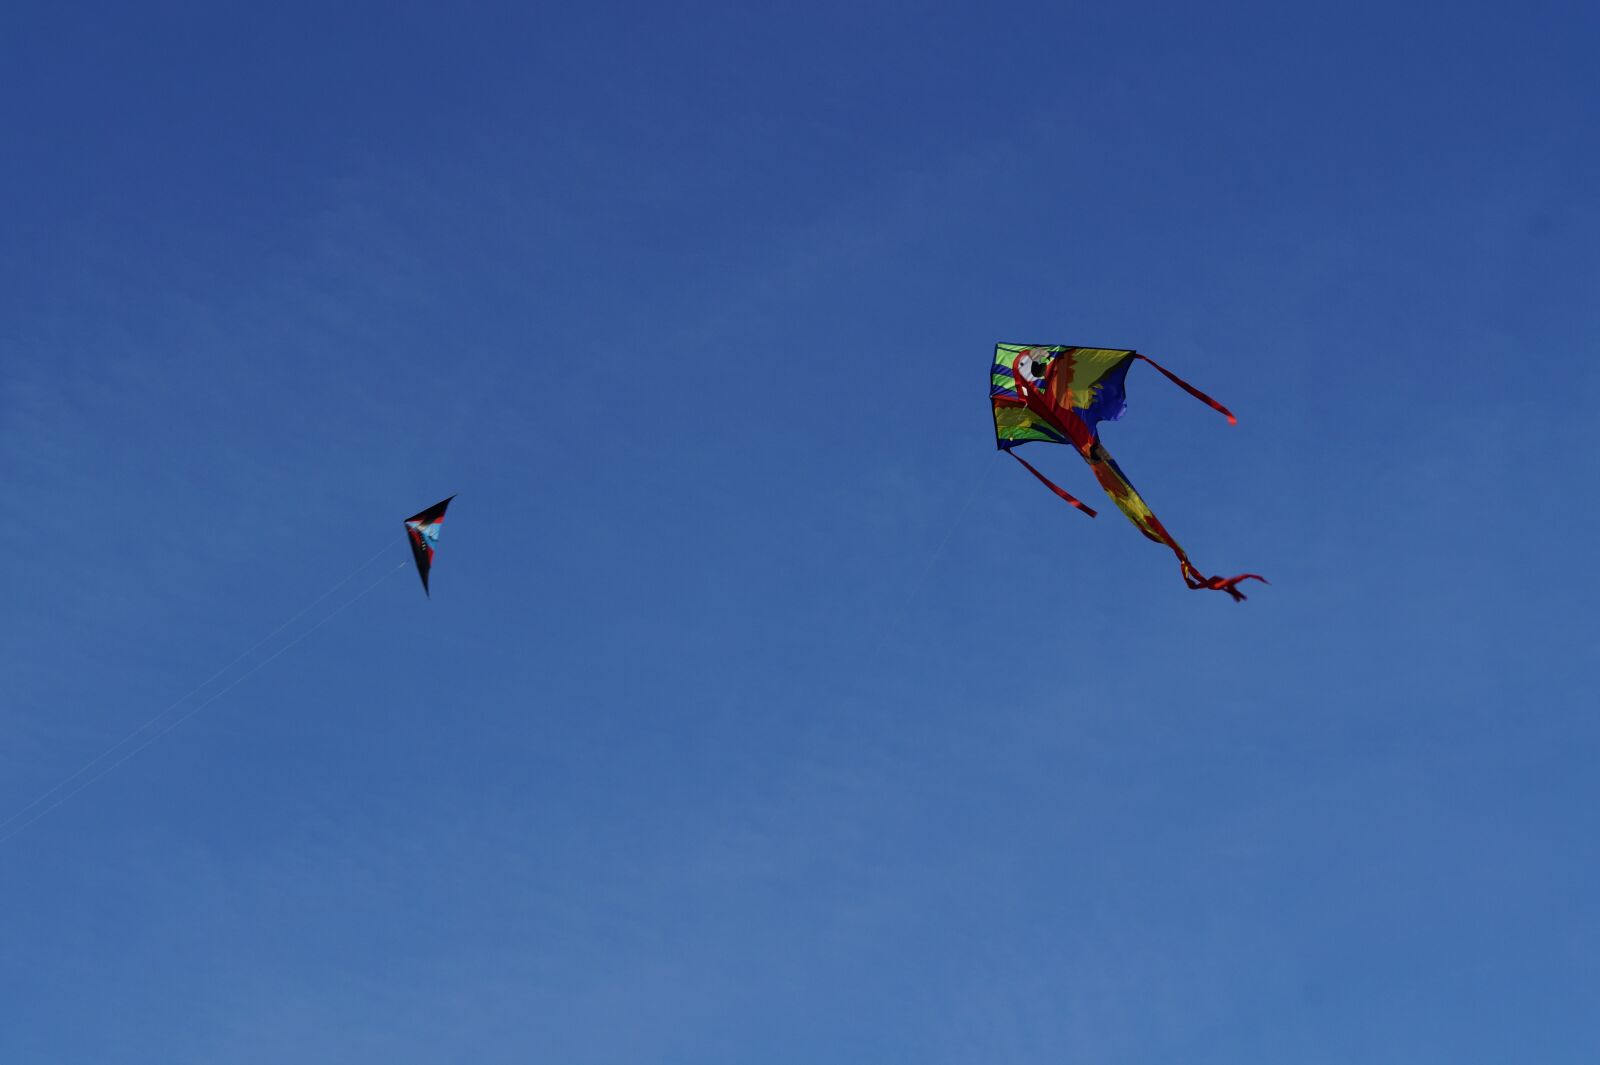 Sony SLT-A58 + Sony DT 50mm F1.8 SAM sample photo. Dragon, kite flying, kites photography